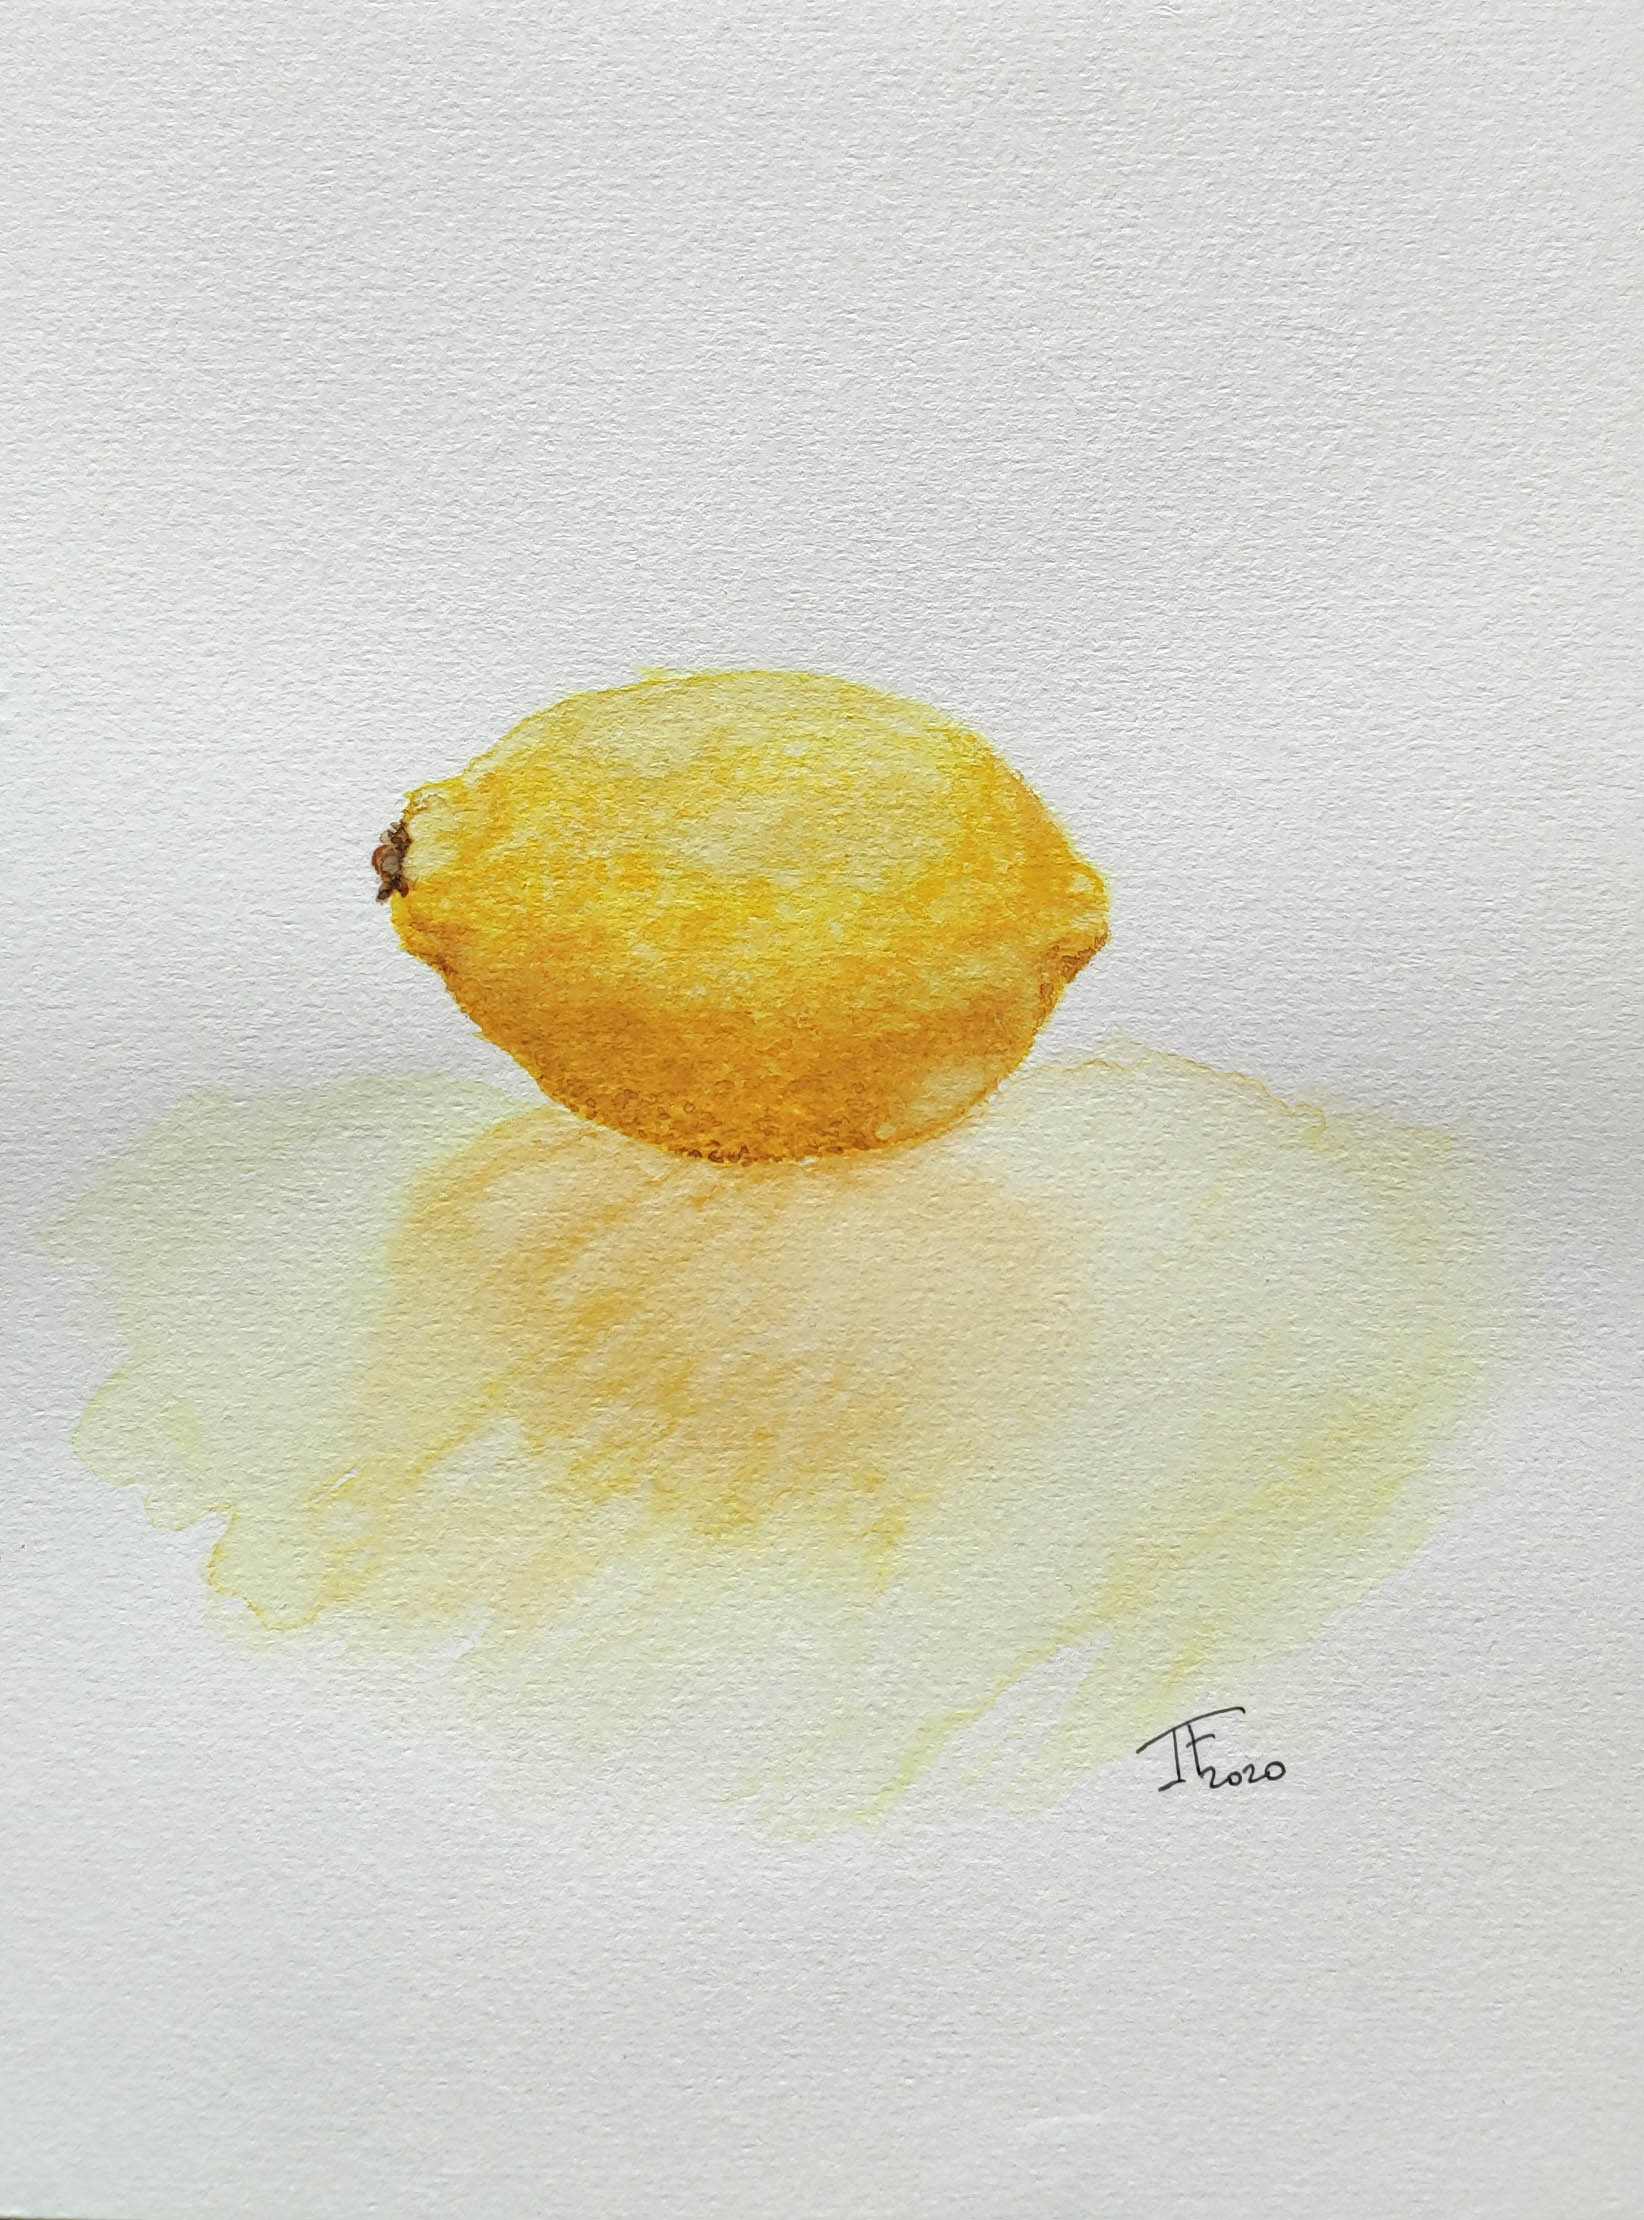 Etude d’un citron à l’aquarelle